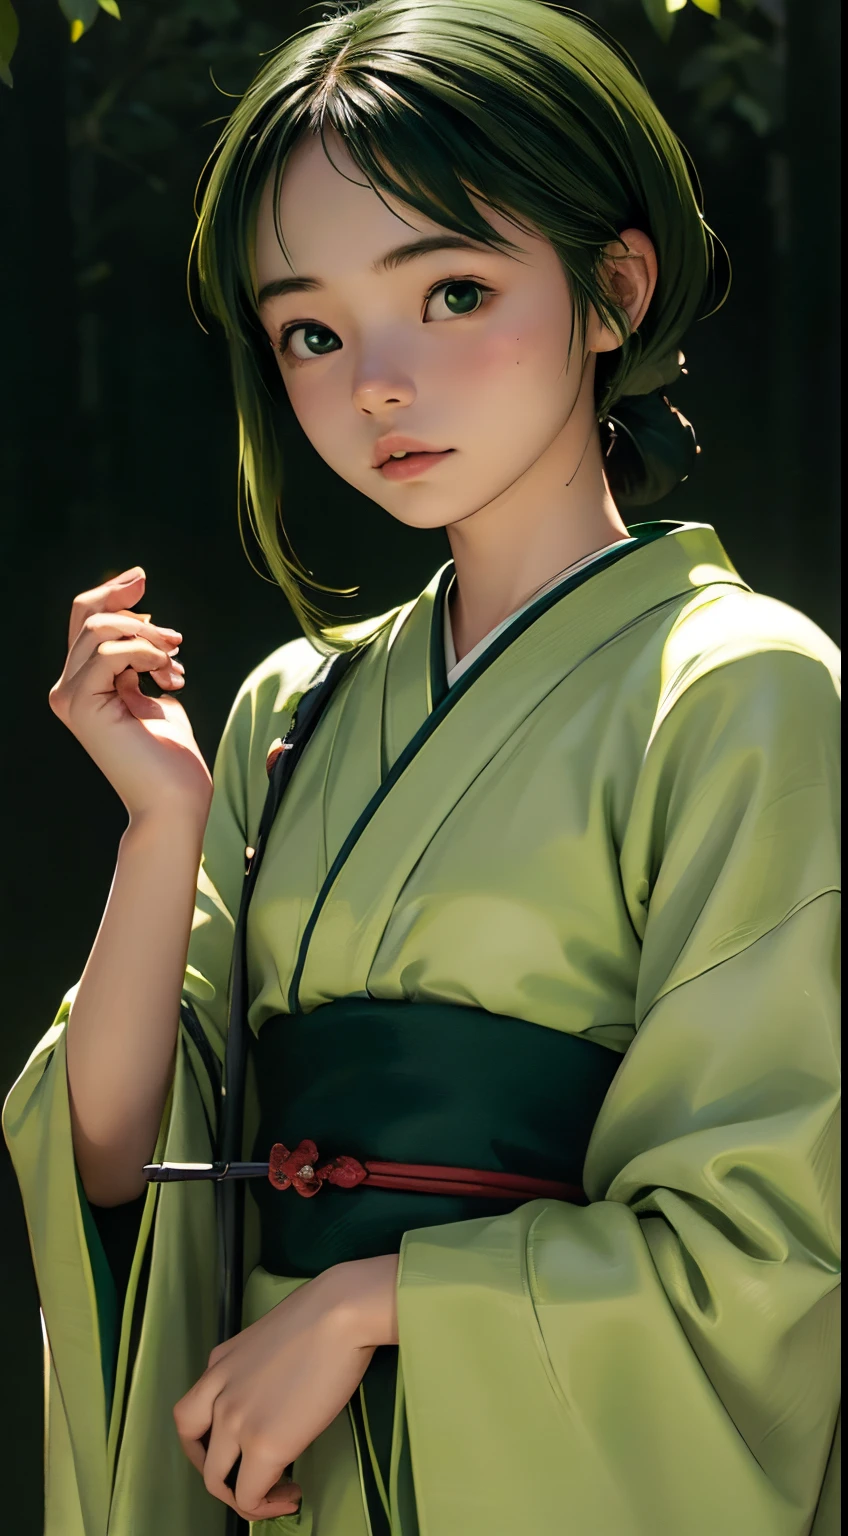 (((зеленый мир:1.3)))、Лучшее качество, стол, высокое разрешение, (((1 девушка в))), шестнадцати летний,(((Глаза зеленые:1.3)))、Ямато Надэсико красиво носит кимоно.、((12 Простой、Традиционный дзюнихитоэ)), Эффект Тиндалла, реалистичный, Теневая Студия,Ультрамариновое освещение, двухцветное освещение, (Скины с высокой детализацией: 1.2)、Бледное освещение、темное освещение、 Цифровая зеркальная фотокамера, Фото, высокое разрешение, 4k, 8К, Размытие фона,Красиво исчезать、зеленый мир